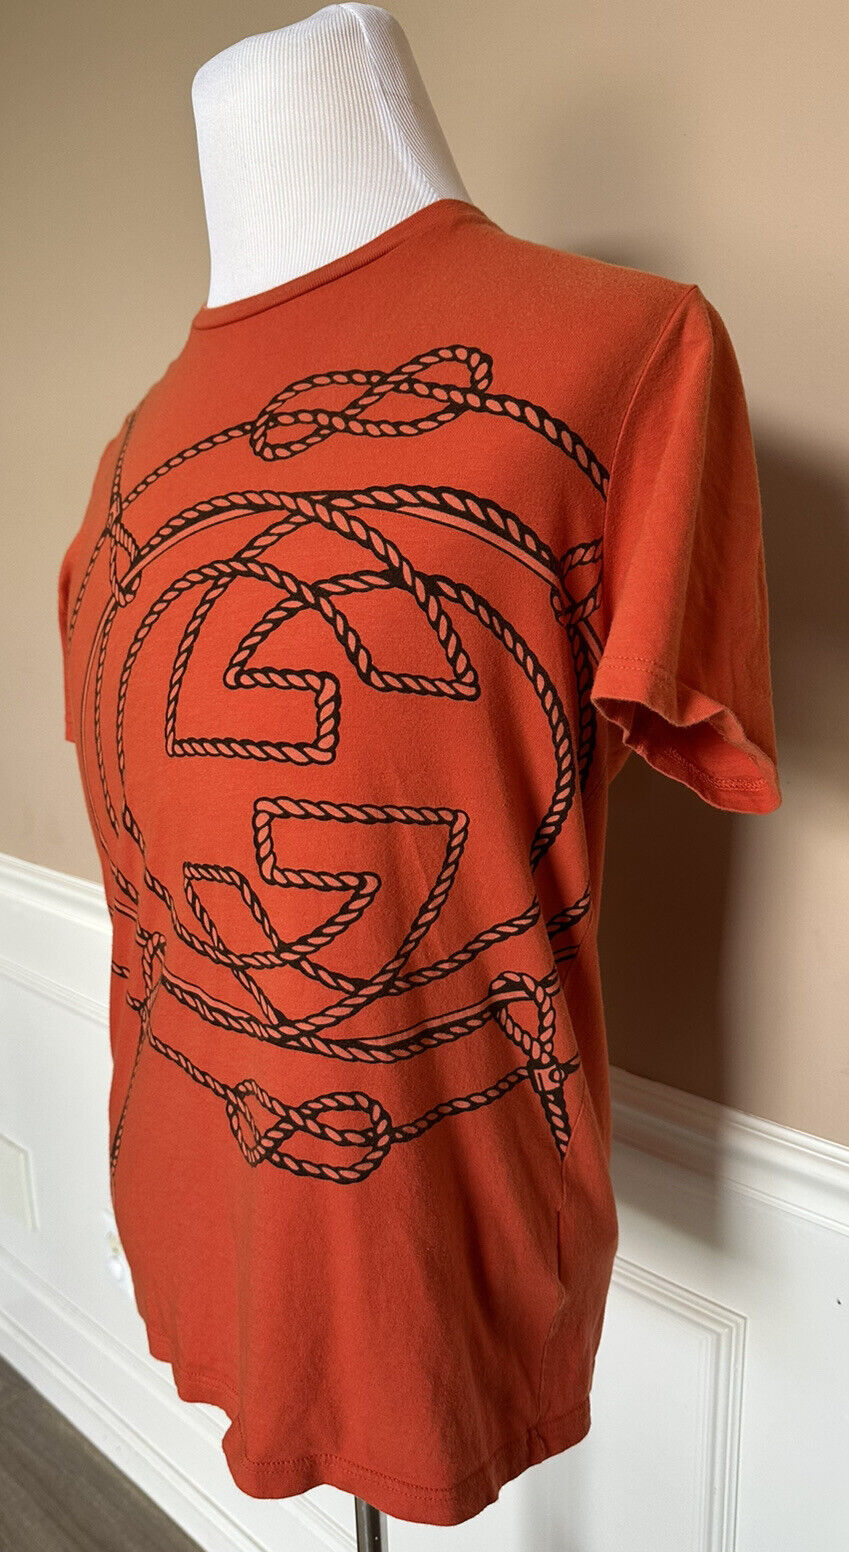 Оранжевая футболка с короткими рукавами и принтом Gucci GG, средний размер 